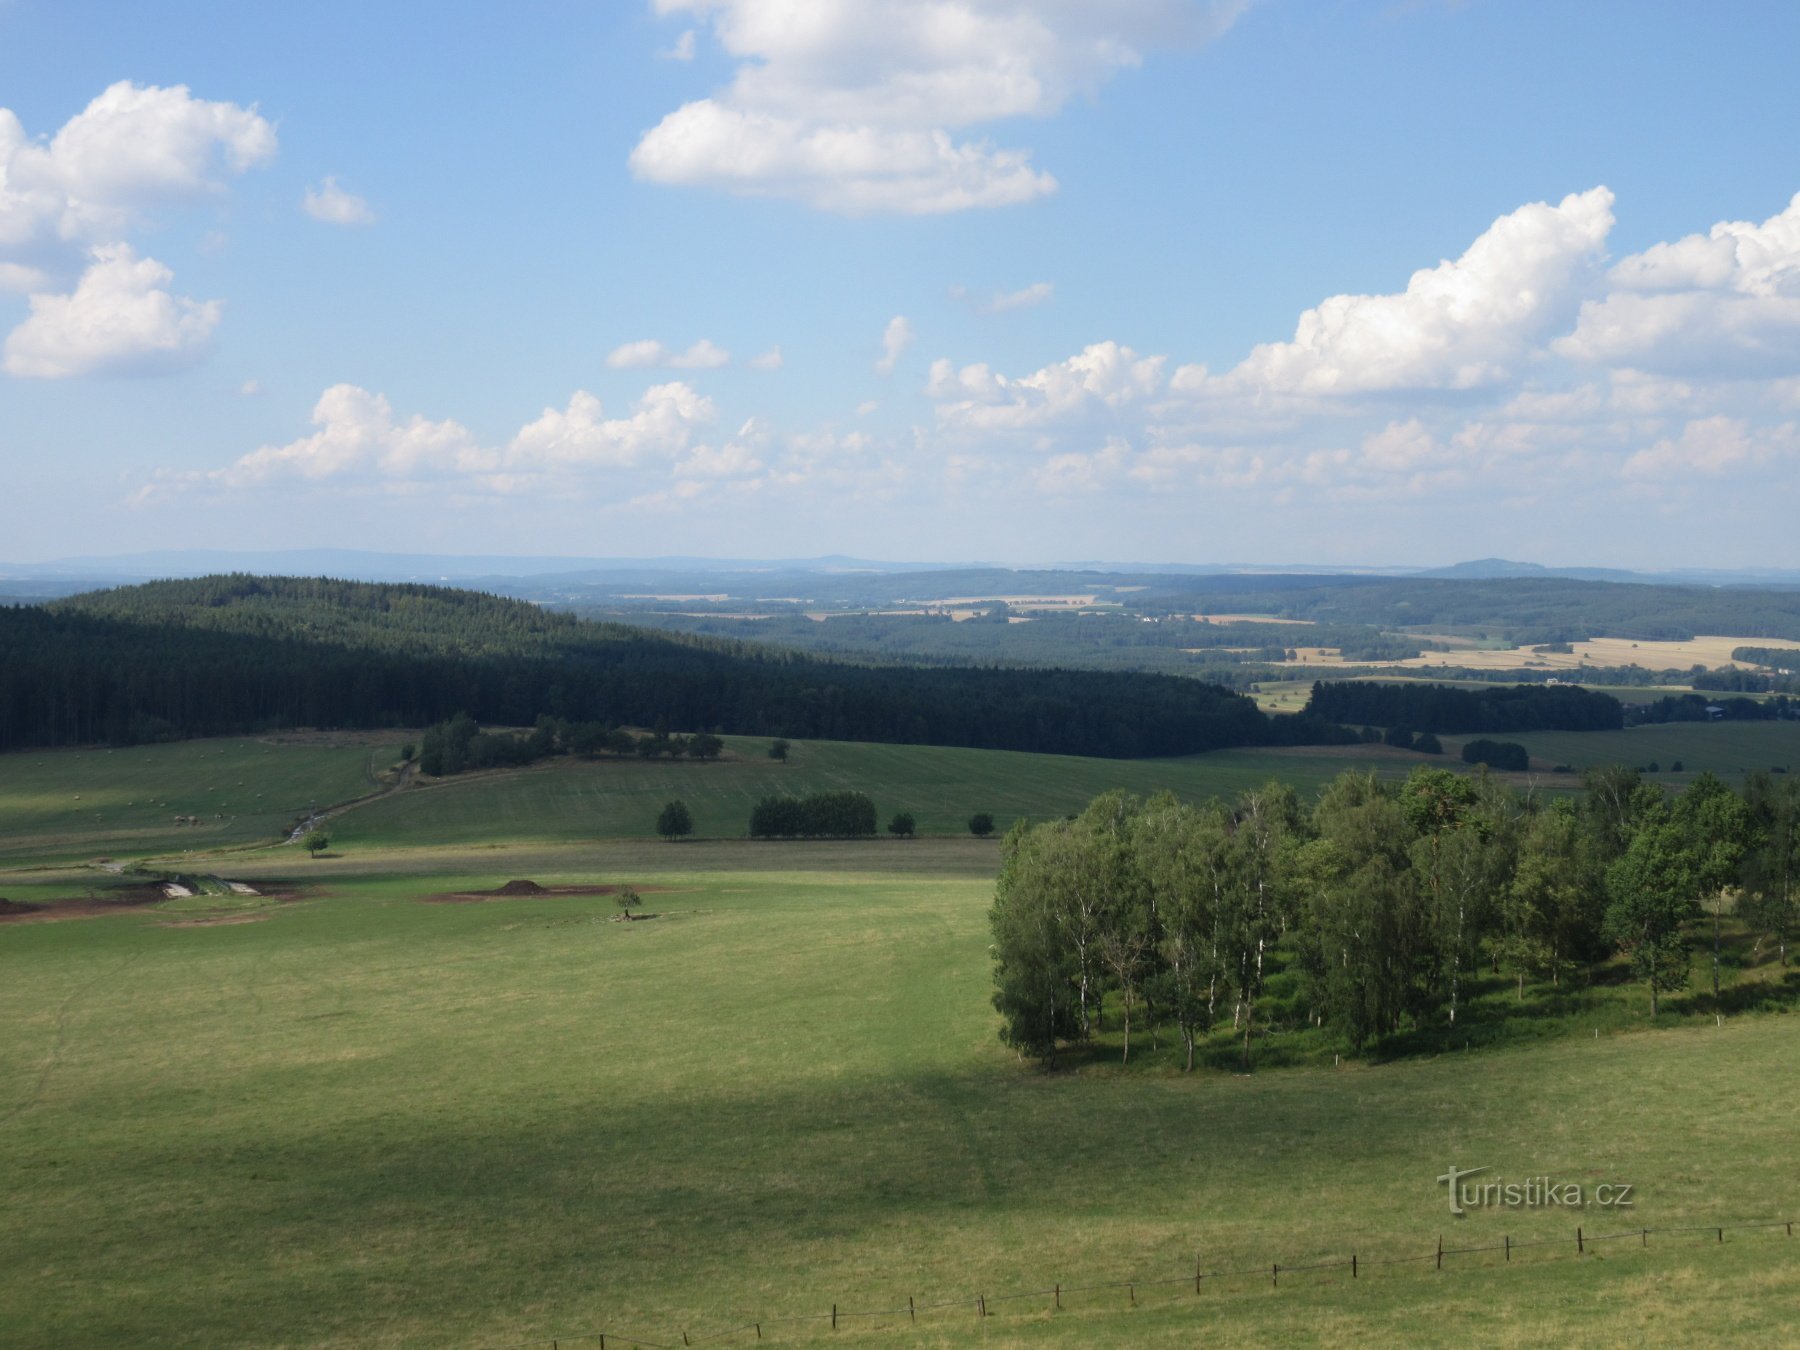 Őr - Březinka kilátó Bernartic közelében